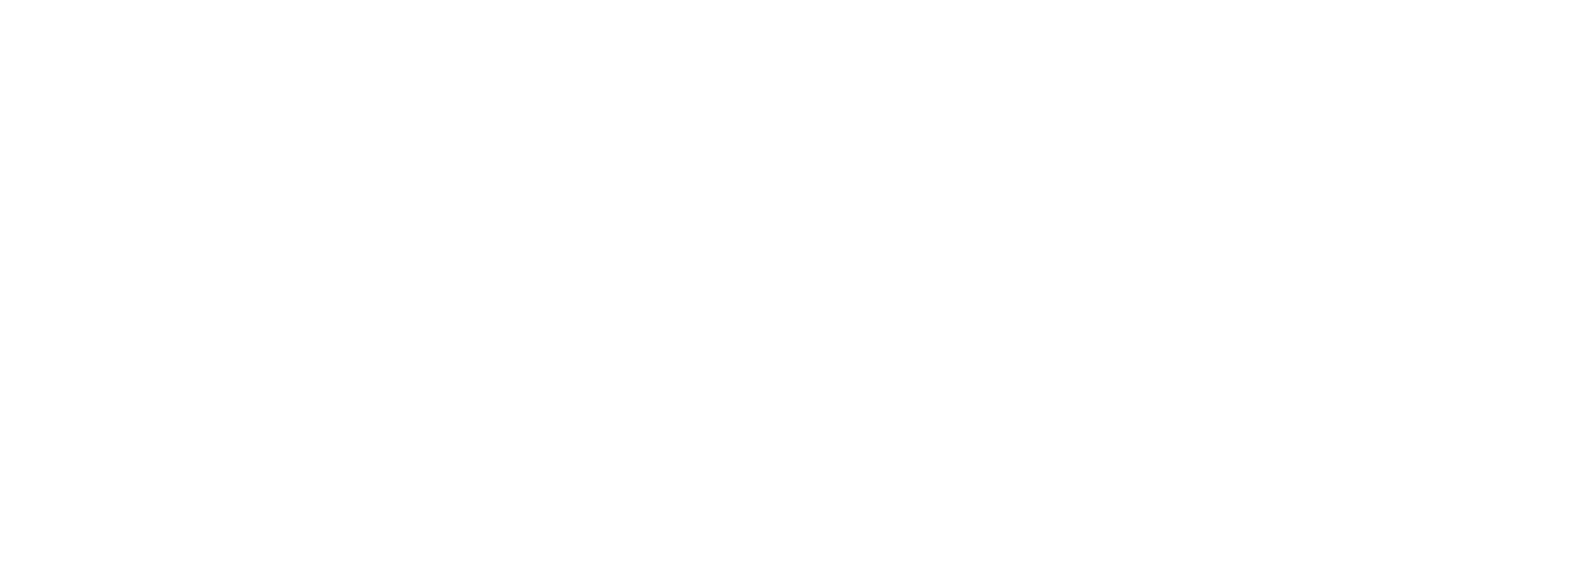 ElringKlinger logo large for dark backgrounds (transparent PNG)